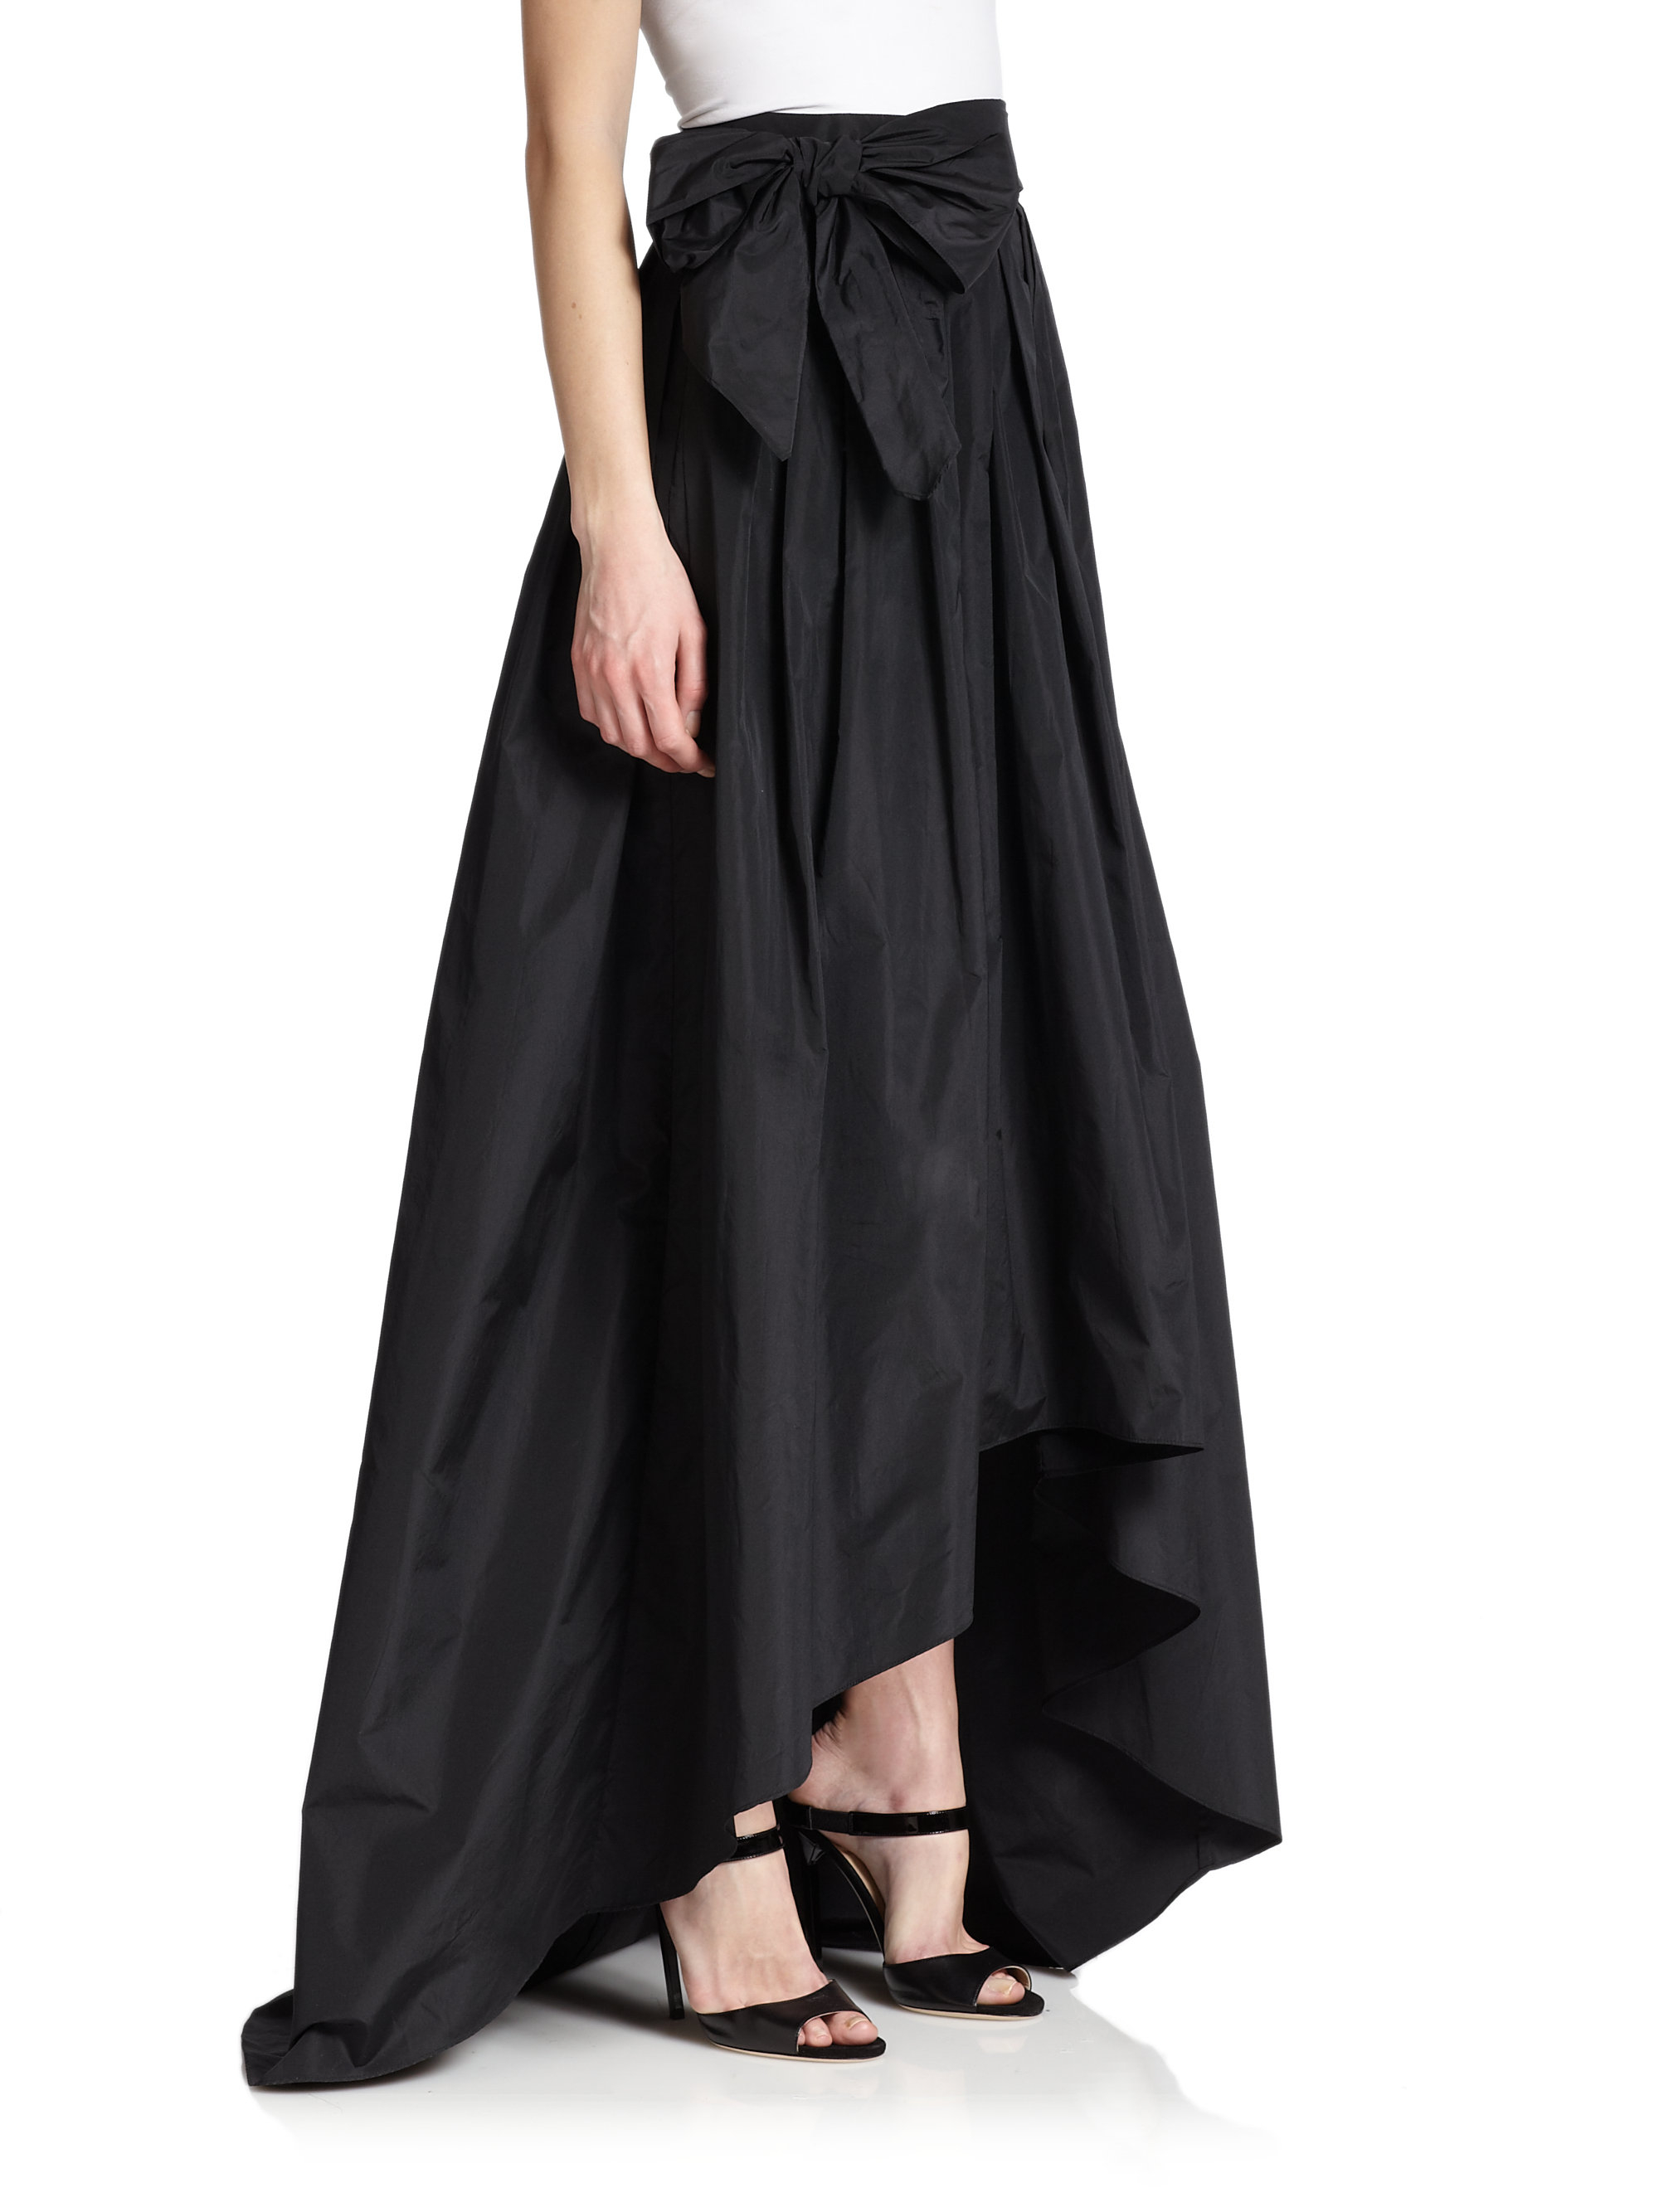 Lyst - Escada Taffeta Hi-lo Ball Skirt in Black